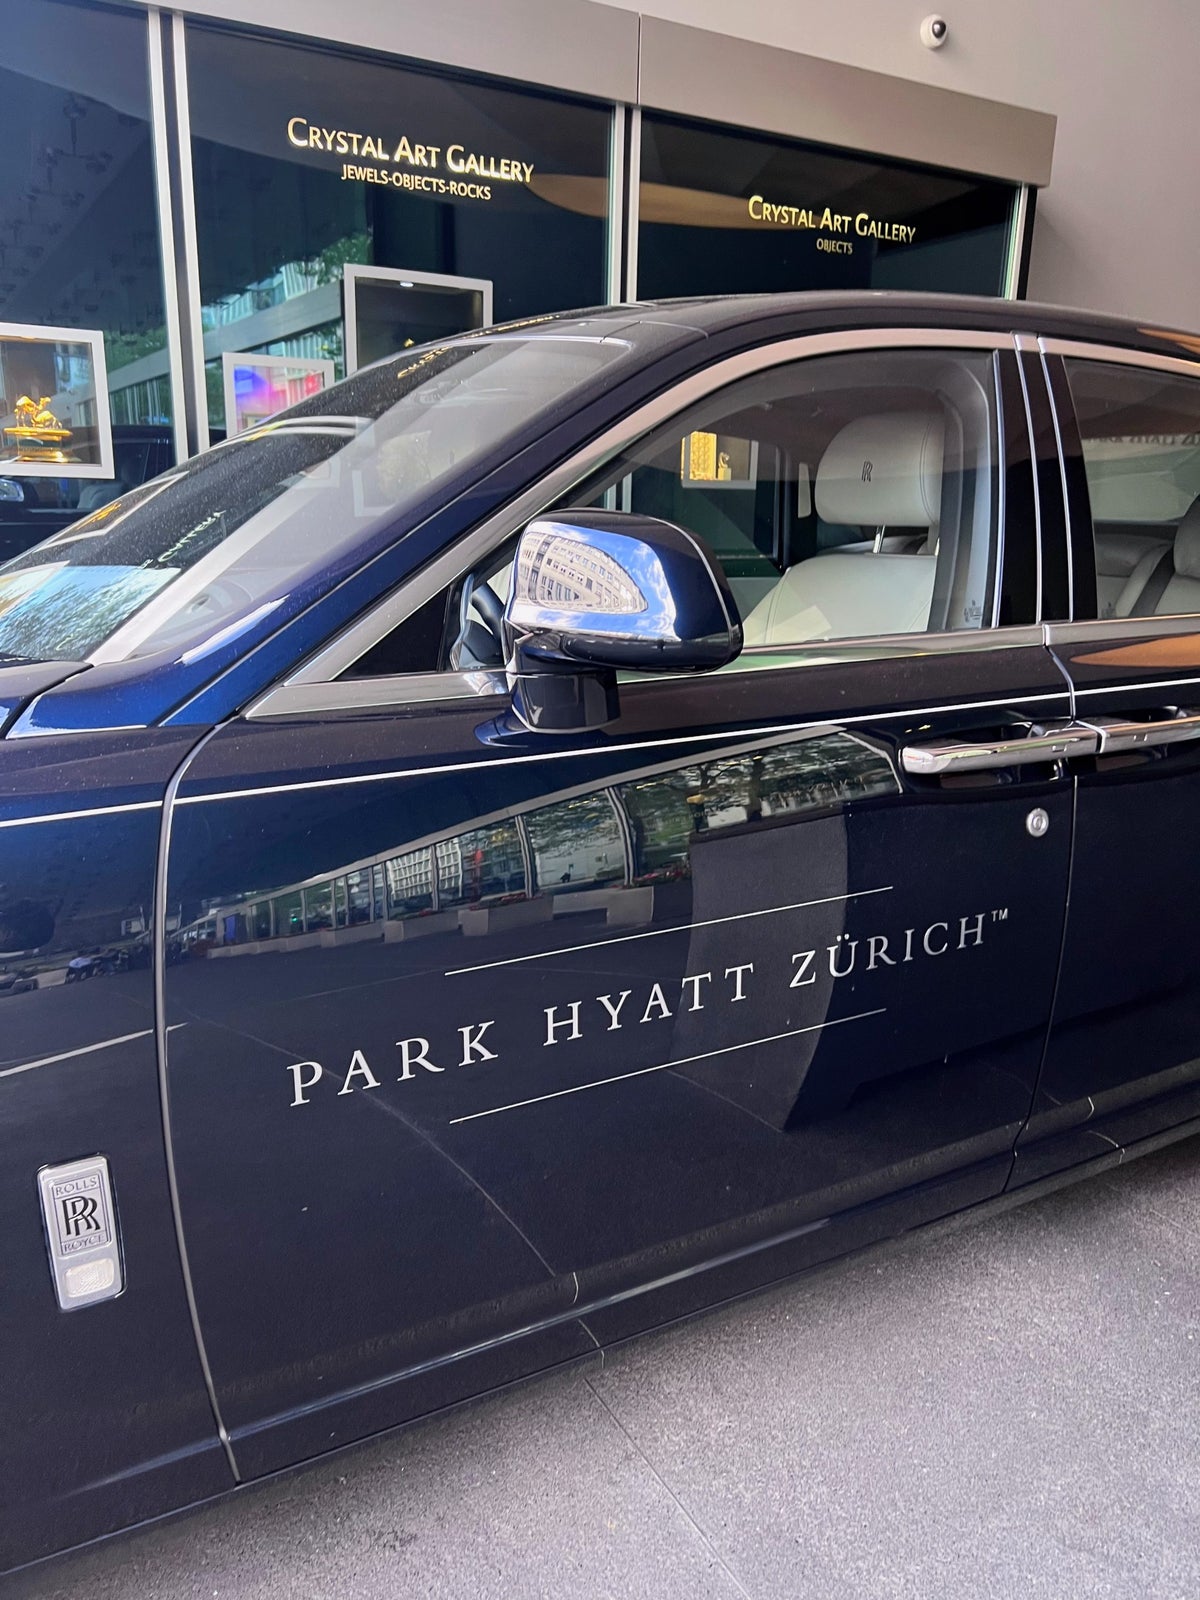 Park Hyatt Zurich Rolls Royce